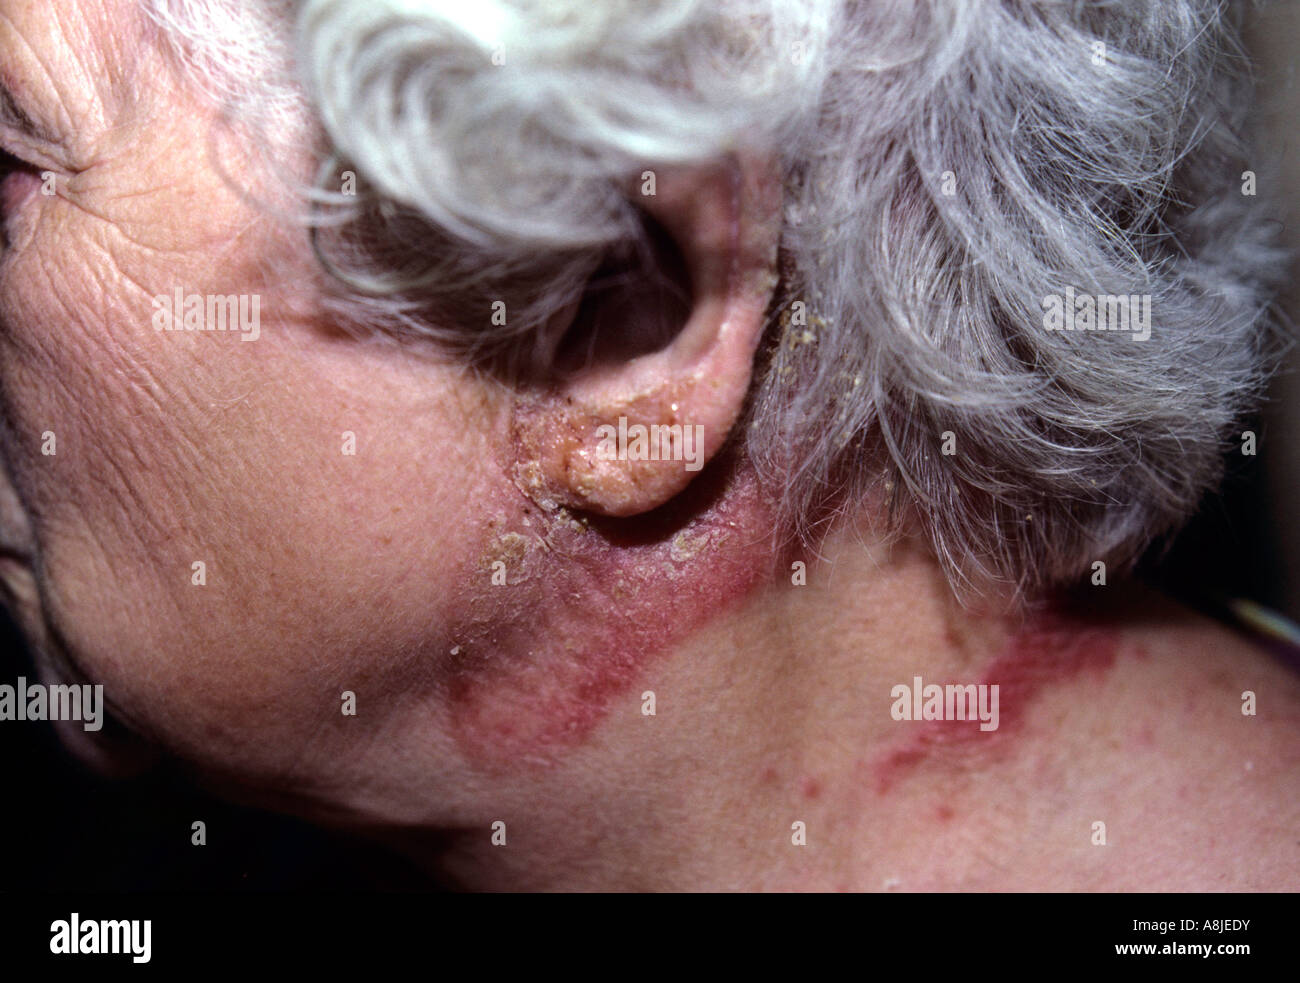 Allergia ai capi di abbigliamento. Rash appare sul collo del paziente. Foto Stock